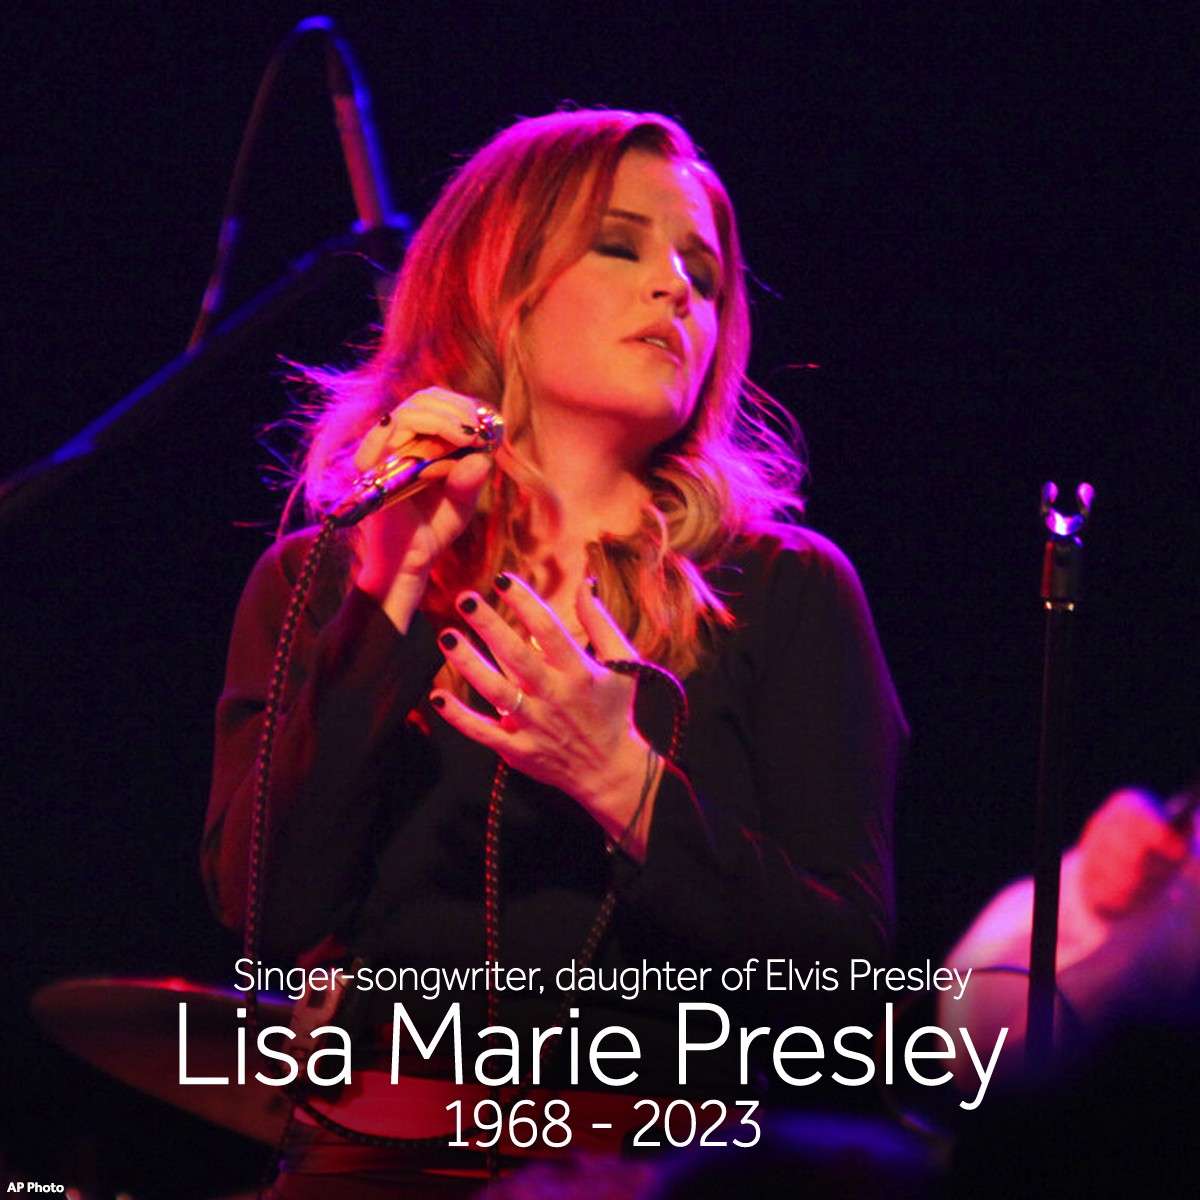  Lisa Marie Presley, Jan 12 2023